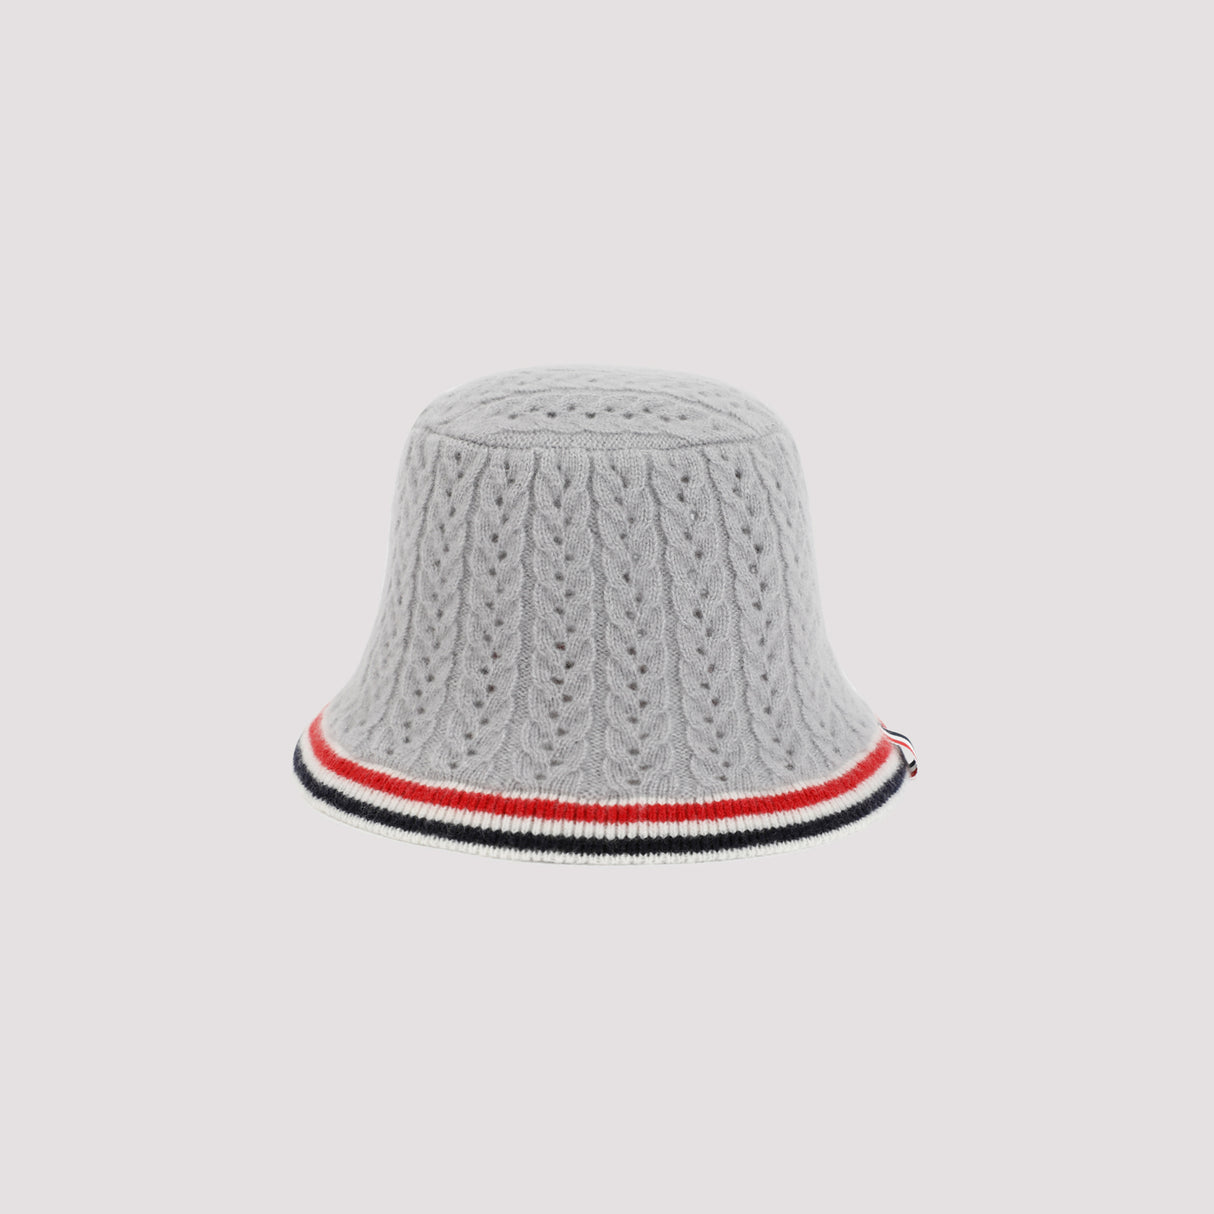 قبعة كاشمير رائعة بلون الرمادي للنساء - مجموعة FW23